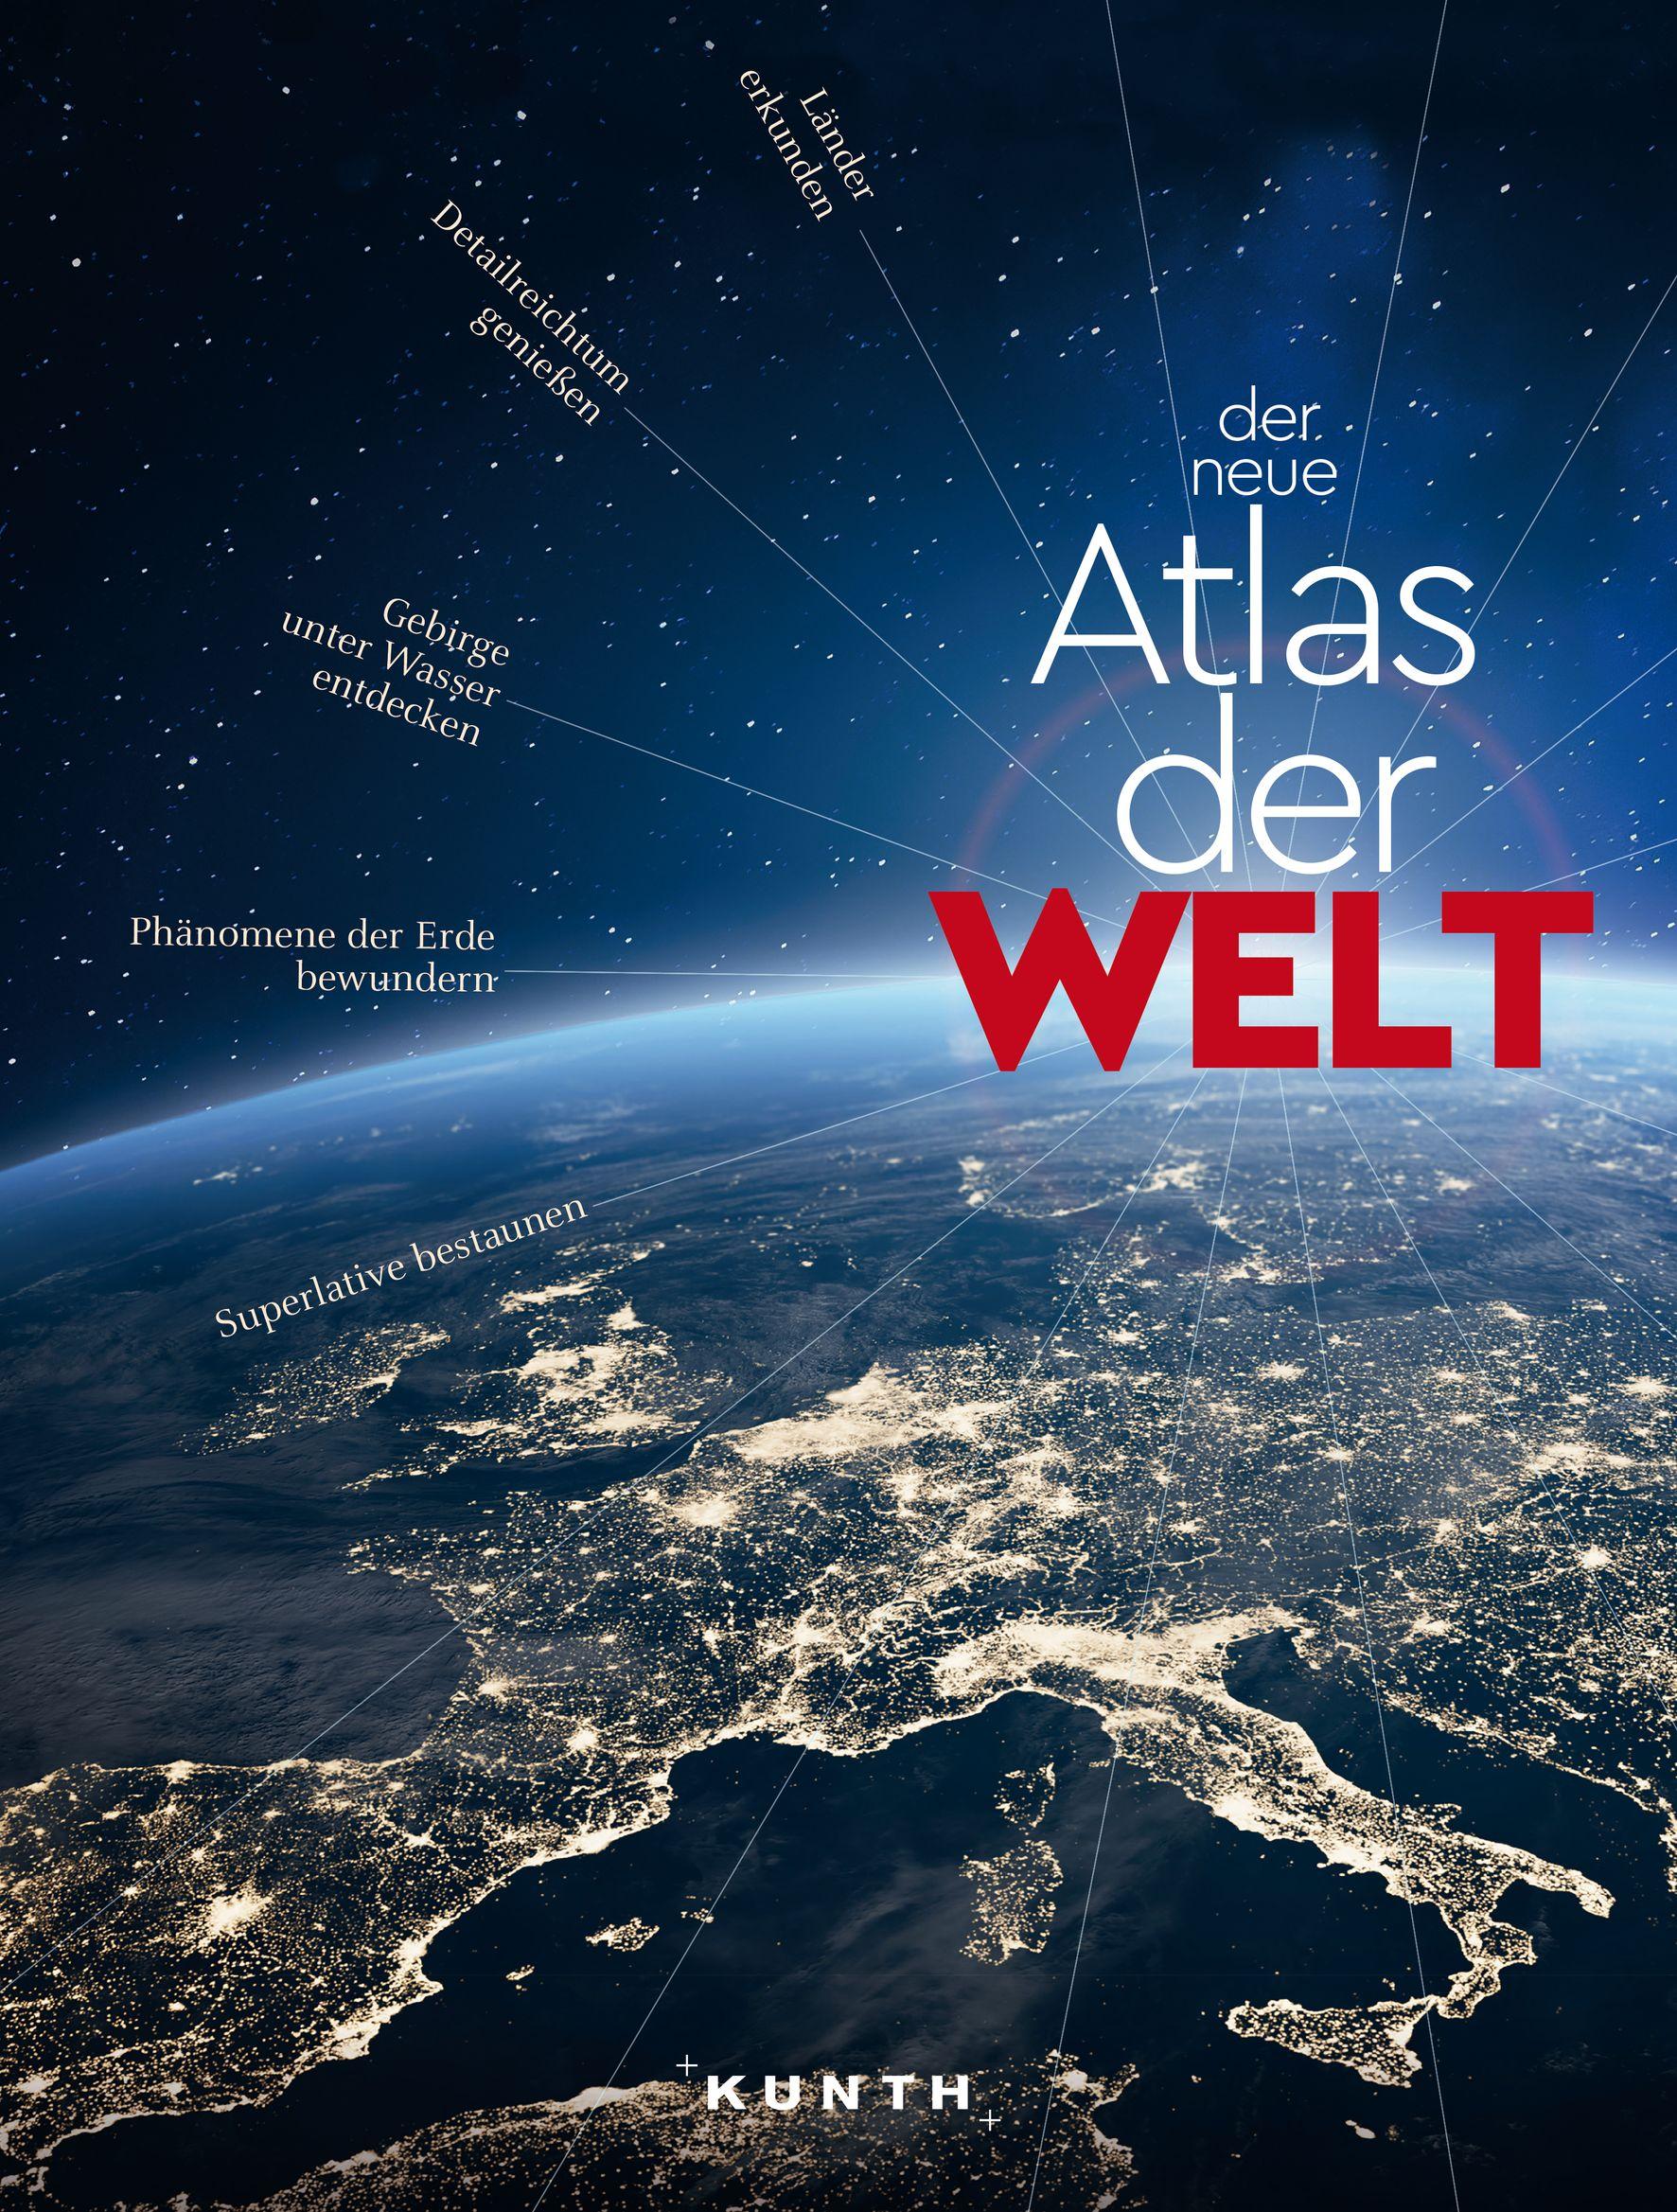 KUNTH Weltatlas Der neue Atlas der Welt Die Erde in übersichtlichen Karten, mit vollständigem Länderlexikon, viel Wissenswertem und den spannendsten Superlativen